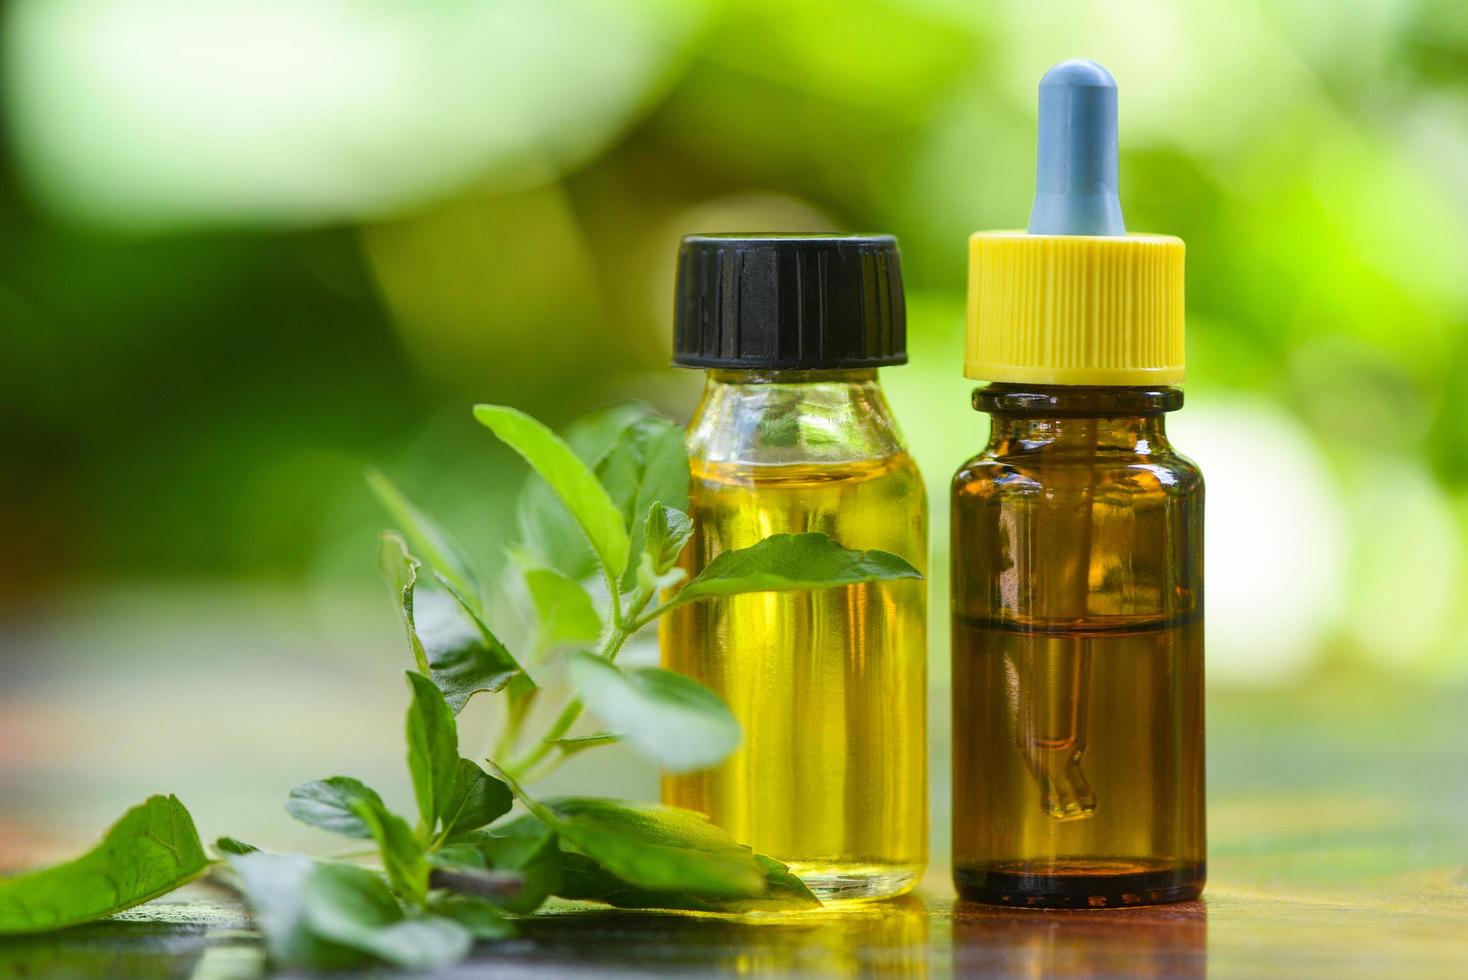 heilig basilicum essentieel olie natuurlijk en groen achtergrond - aromatherapie kruiden olie flessen aroma met bladeren kruiden formuleringen inclusief en kruiden foto